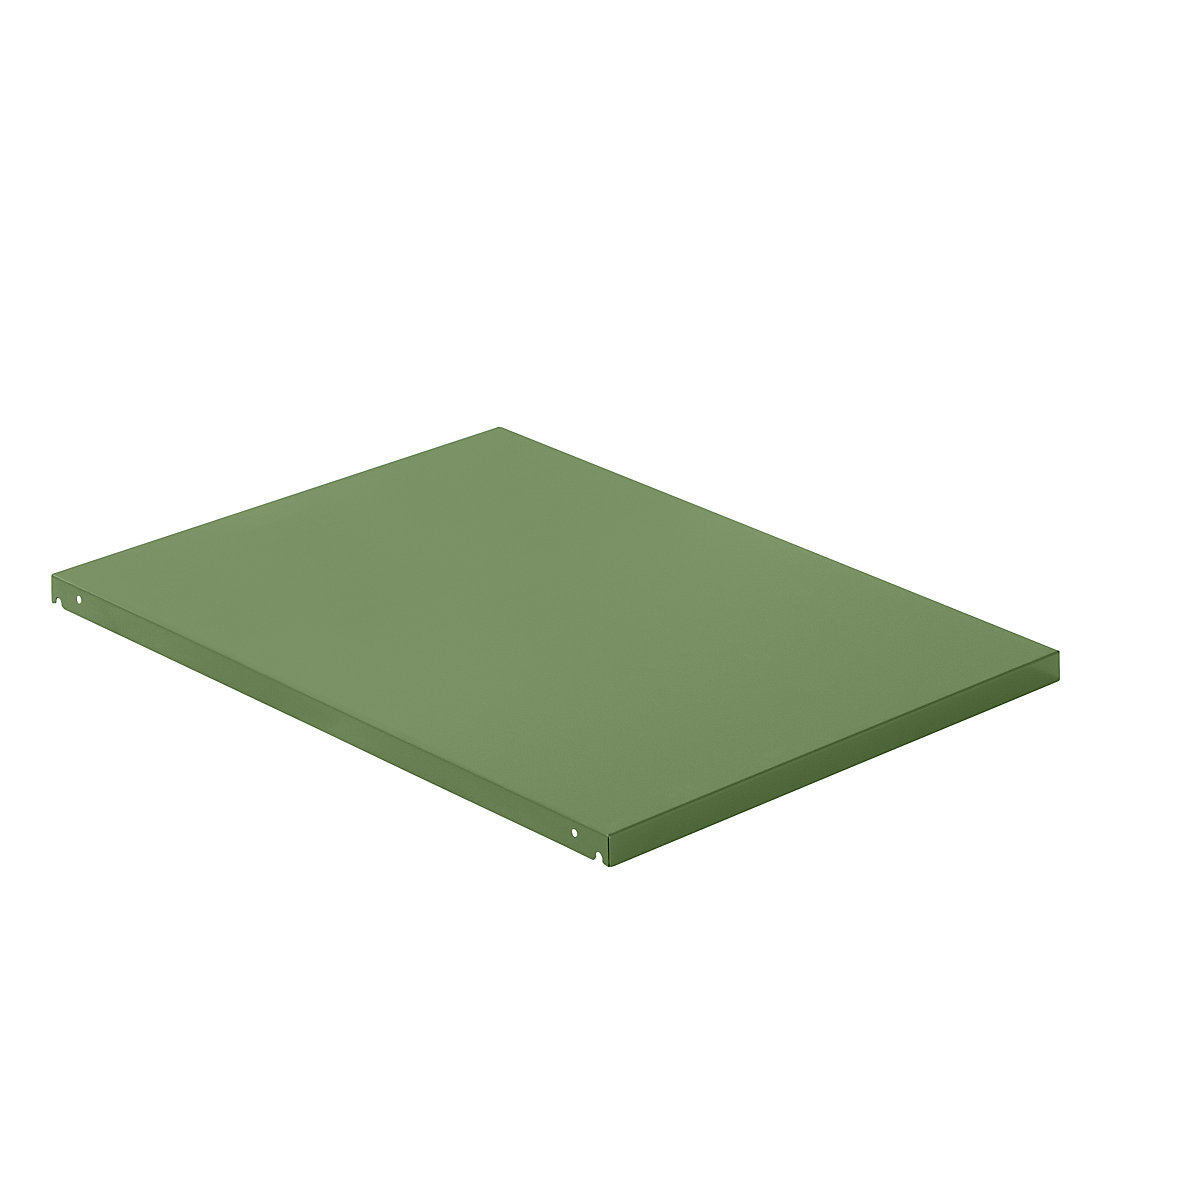 Półka wieńcząca z blachy stalowej – LISTA, szer. x głęb. 890 x 1260 mm, nośność półki 100 kg, rezedowo-zielony-4